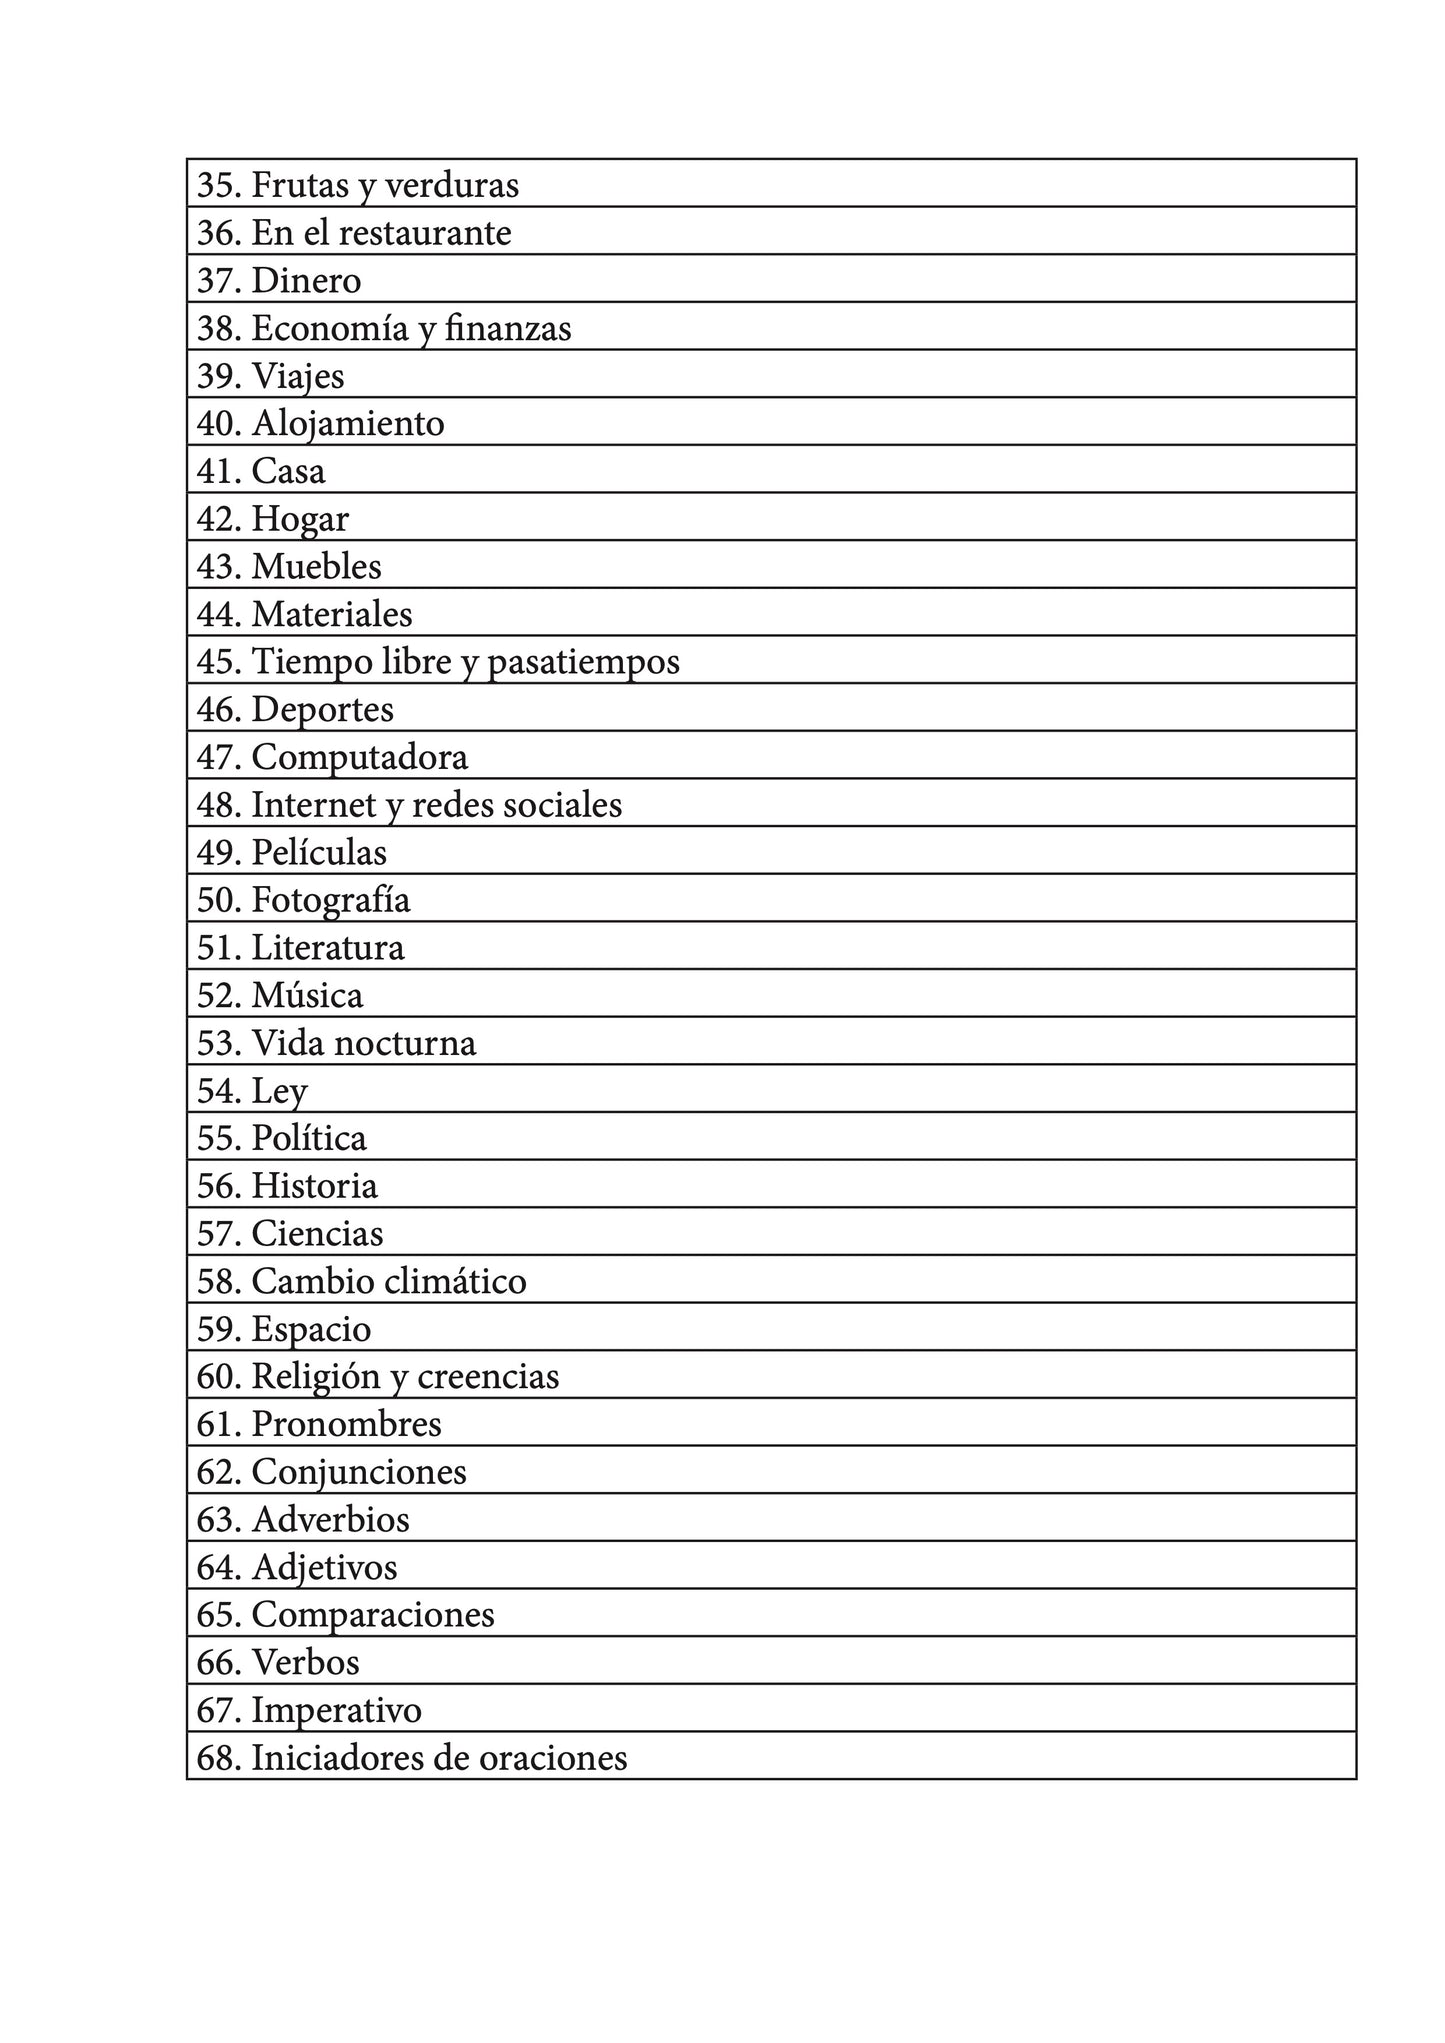 Español-checo cuaderno de vocabulario